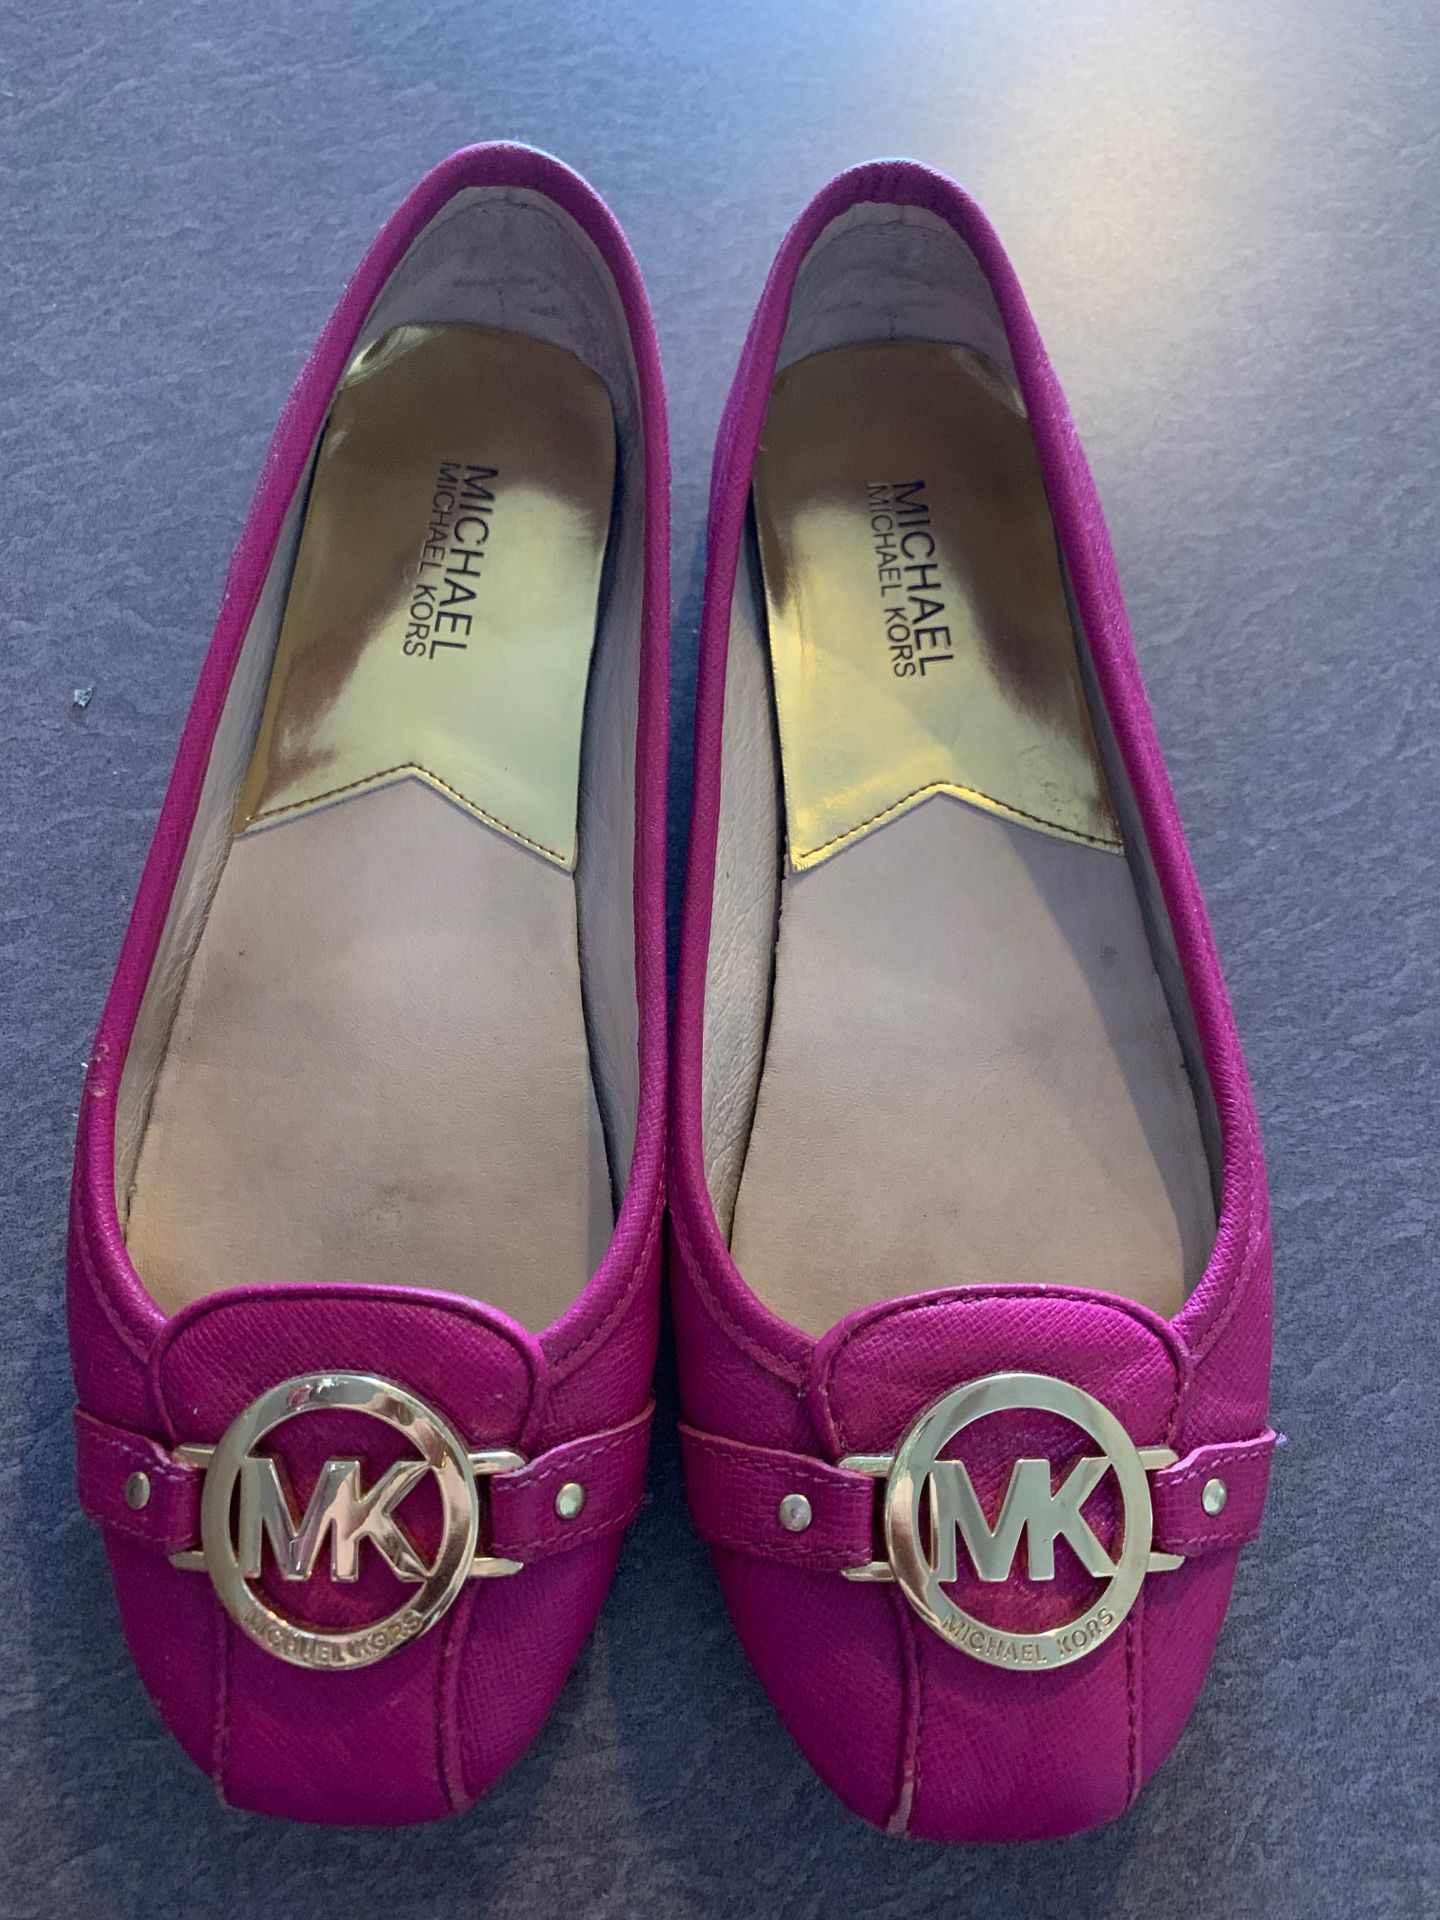 Michael kors shoes size 8,5